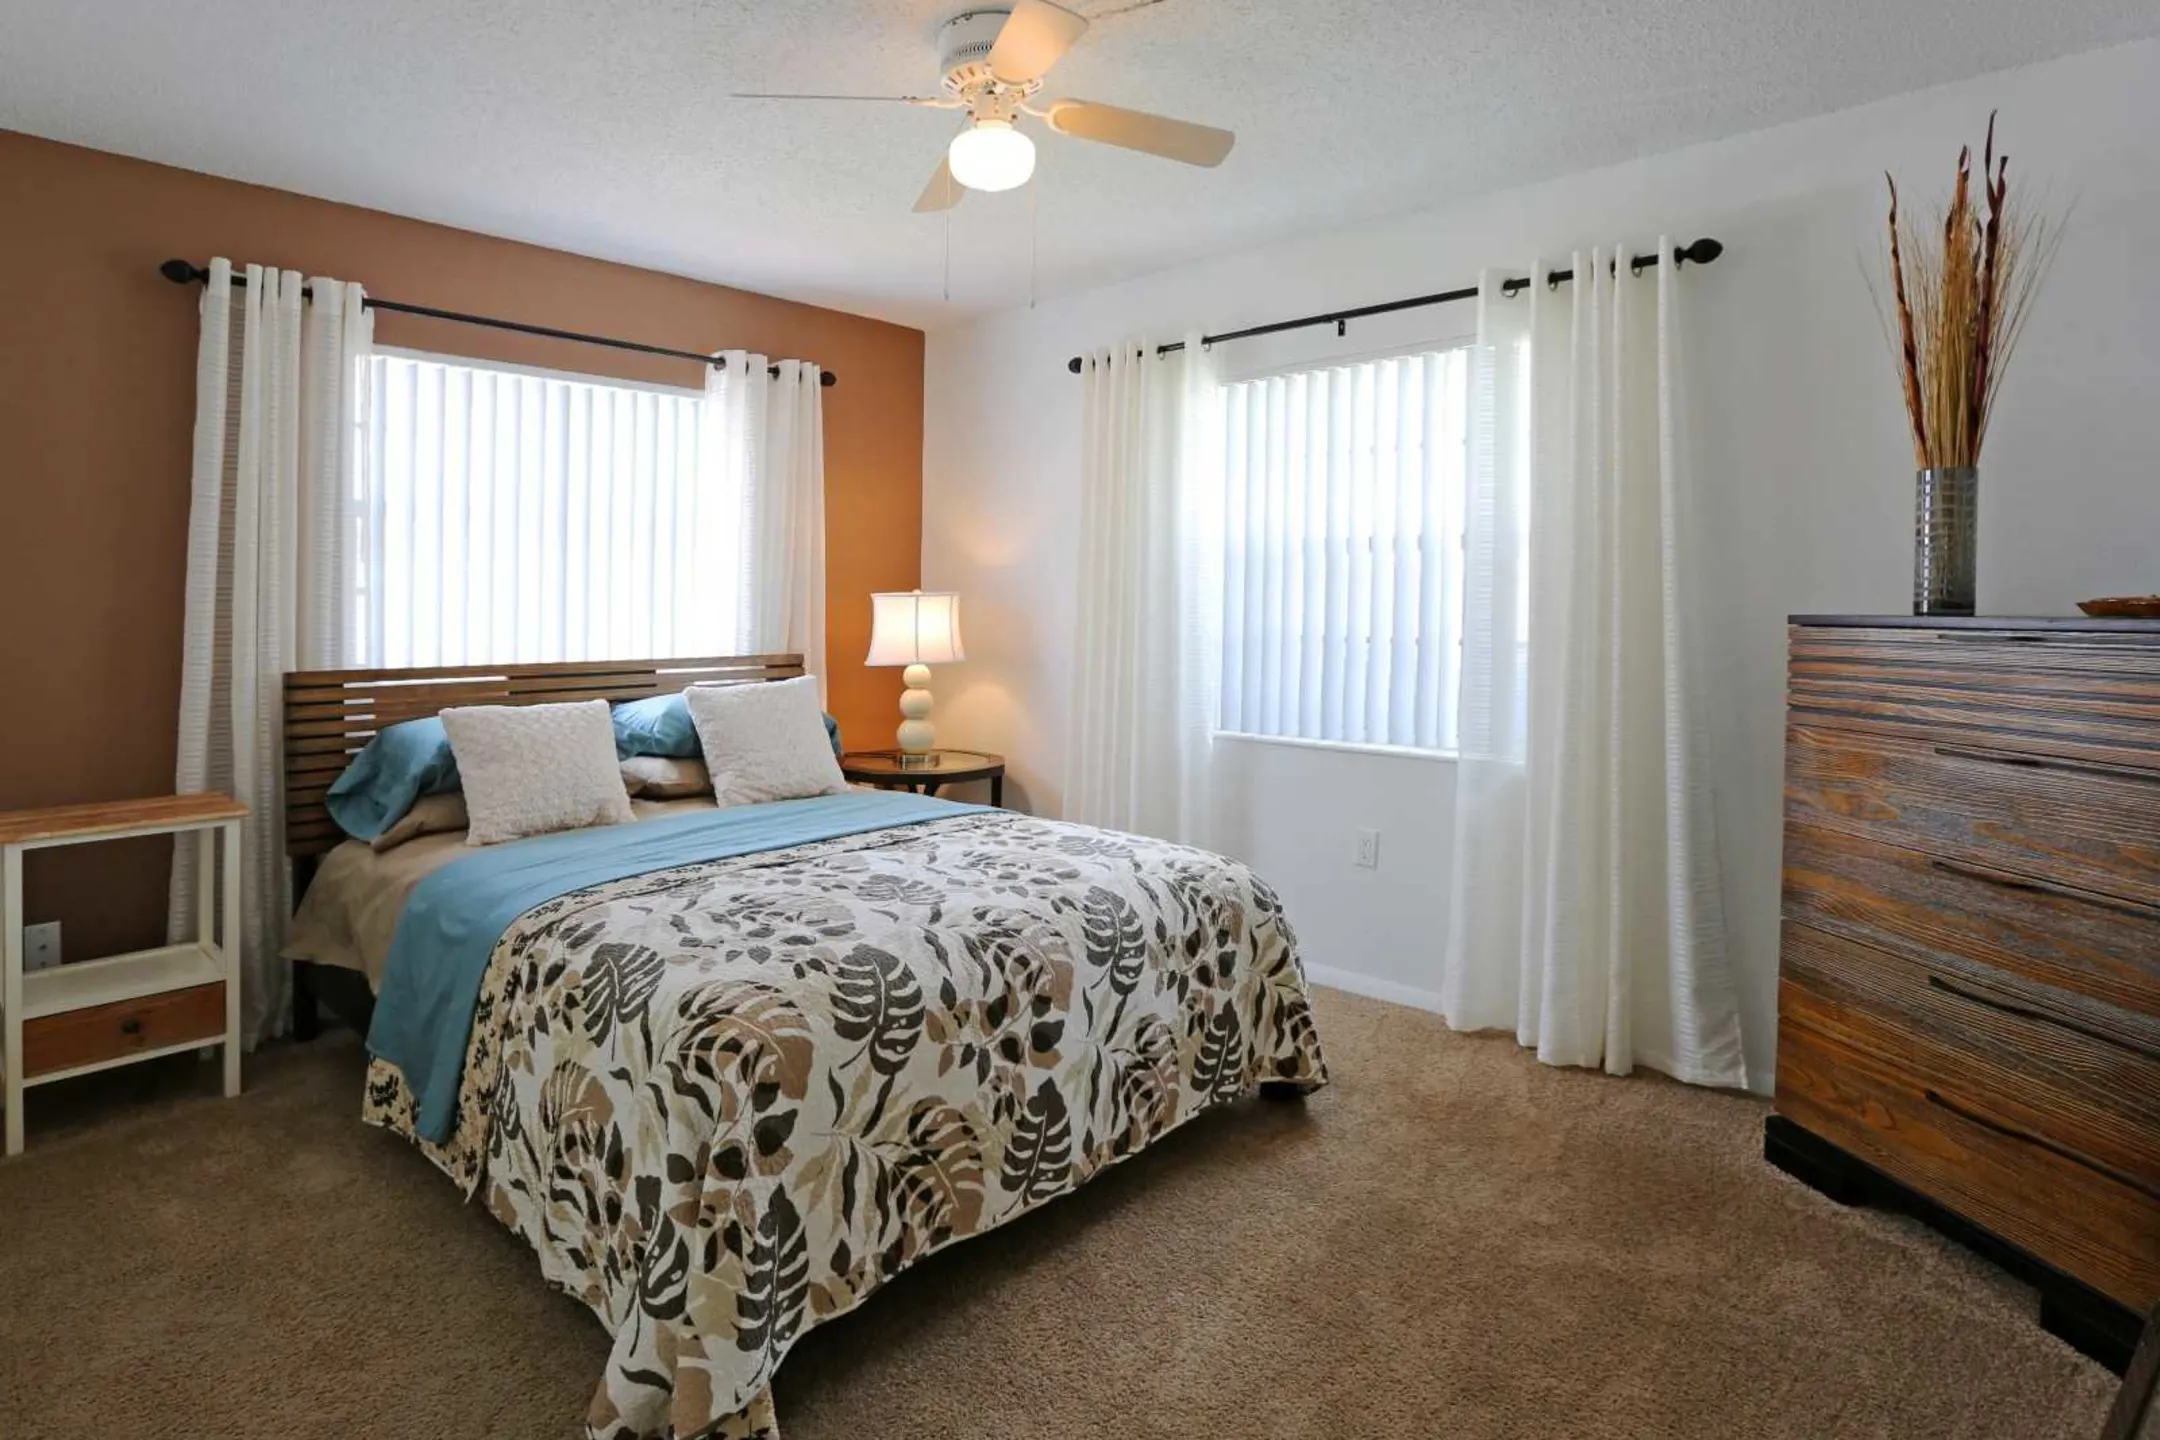 Bedroom - La Aloma Apartments - Winter Park, FL